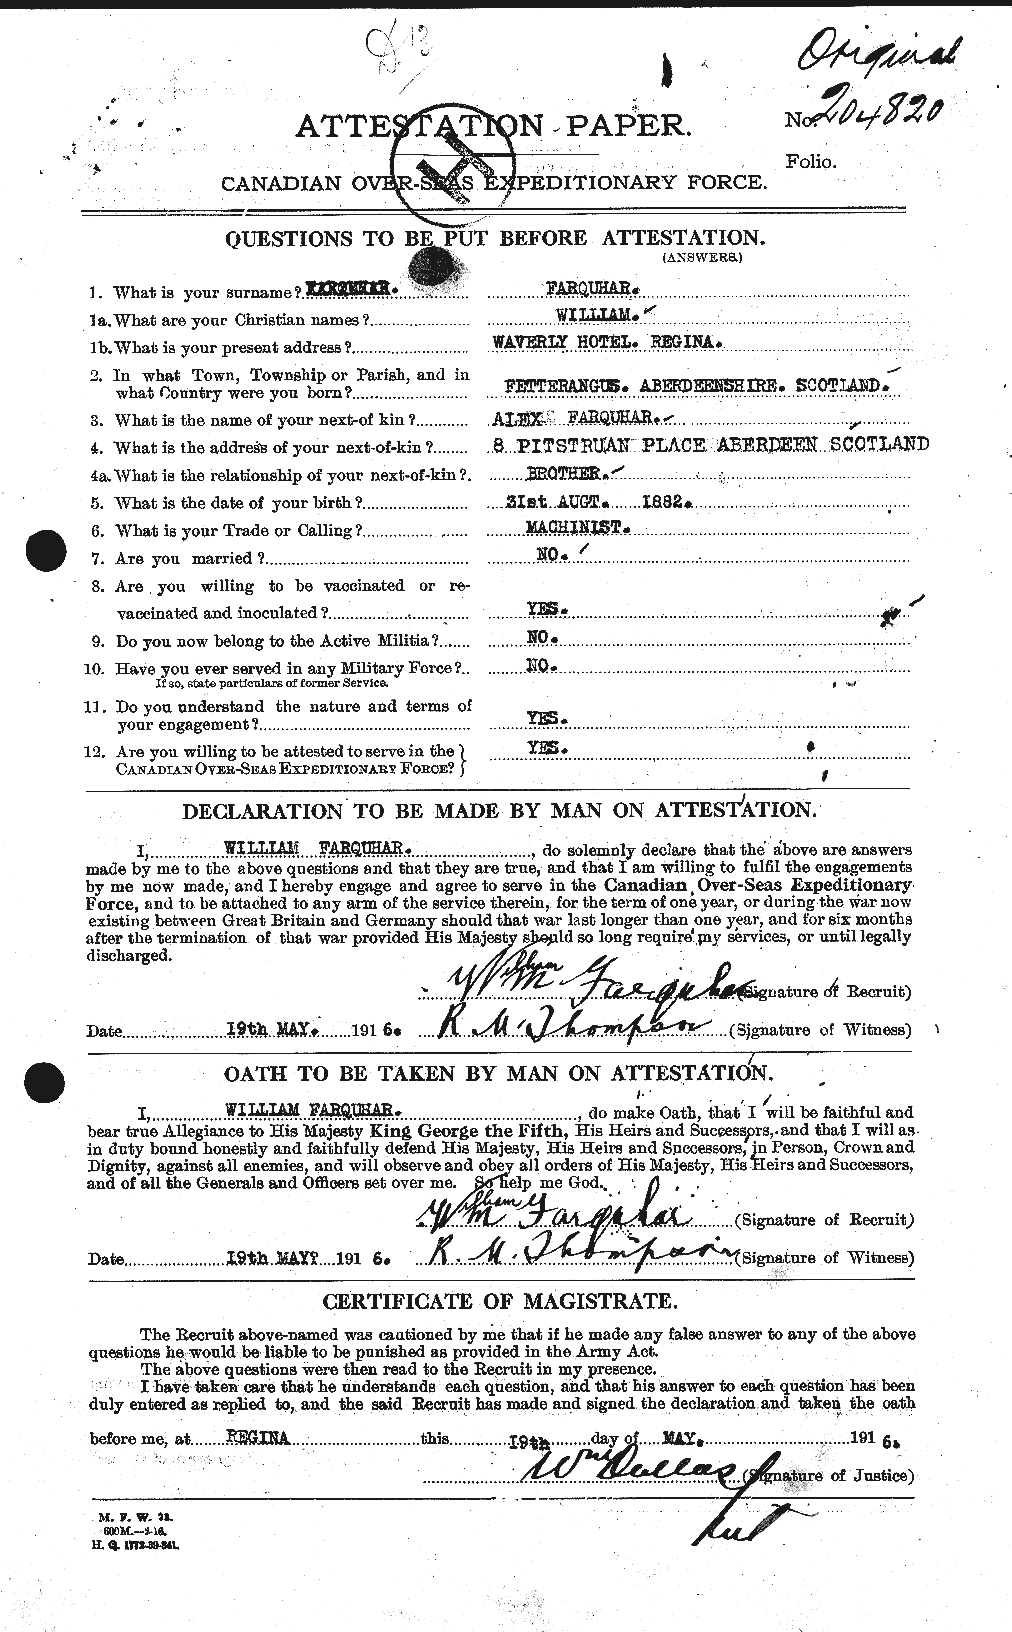 Dossiers du Personnel de la Première Guerre mondiale - CEC 319283a